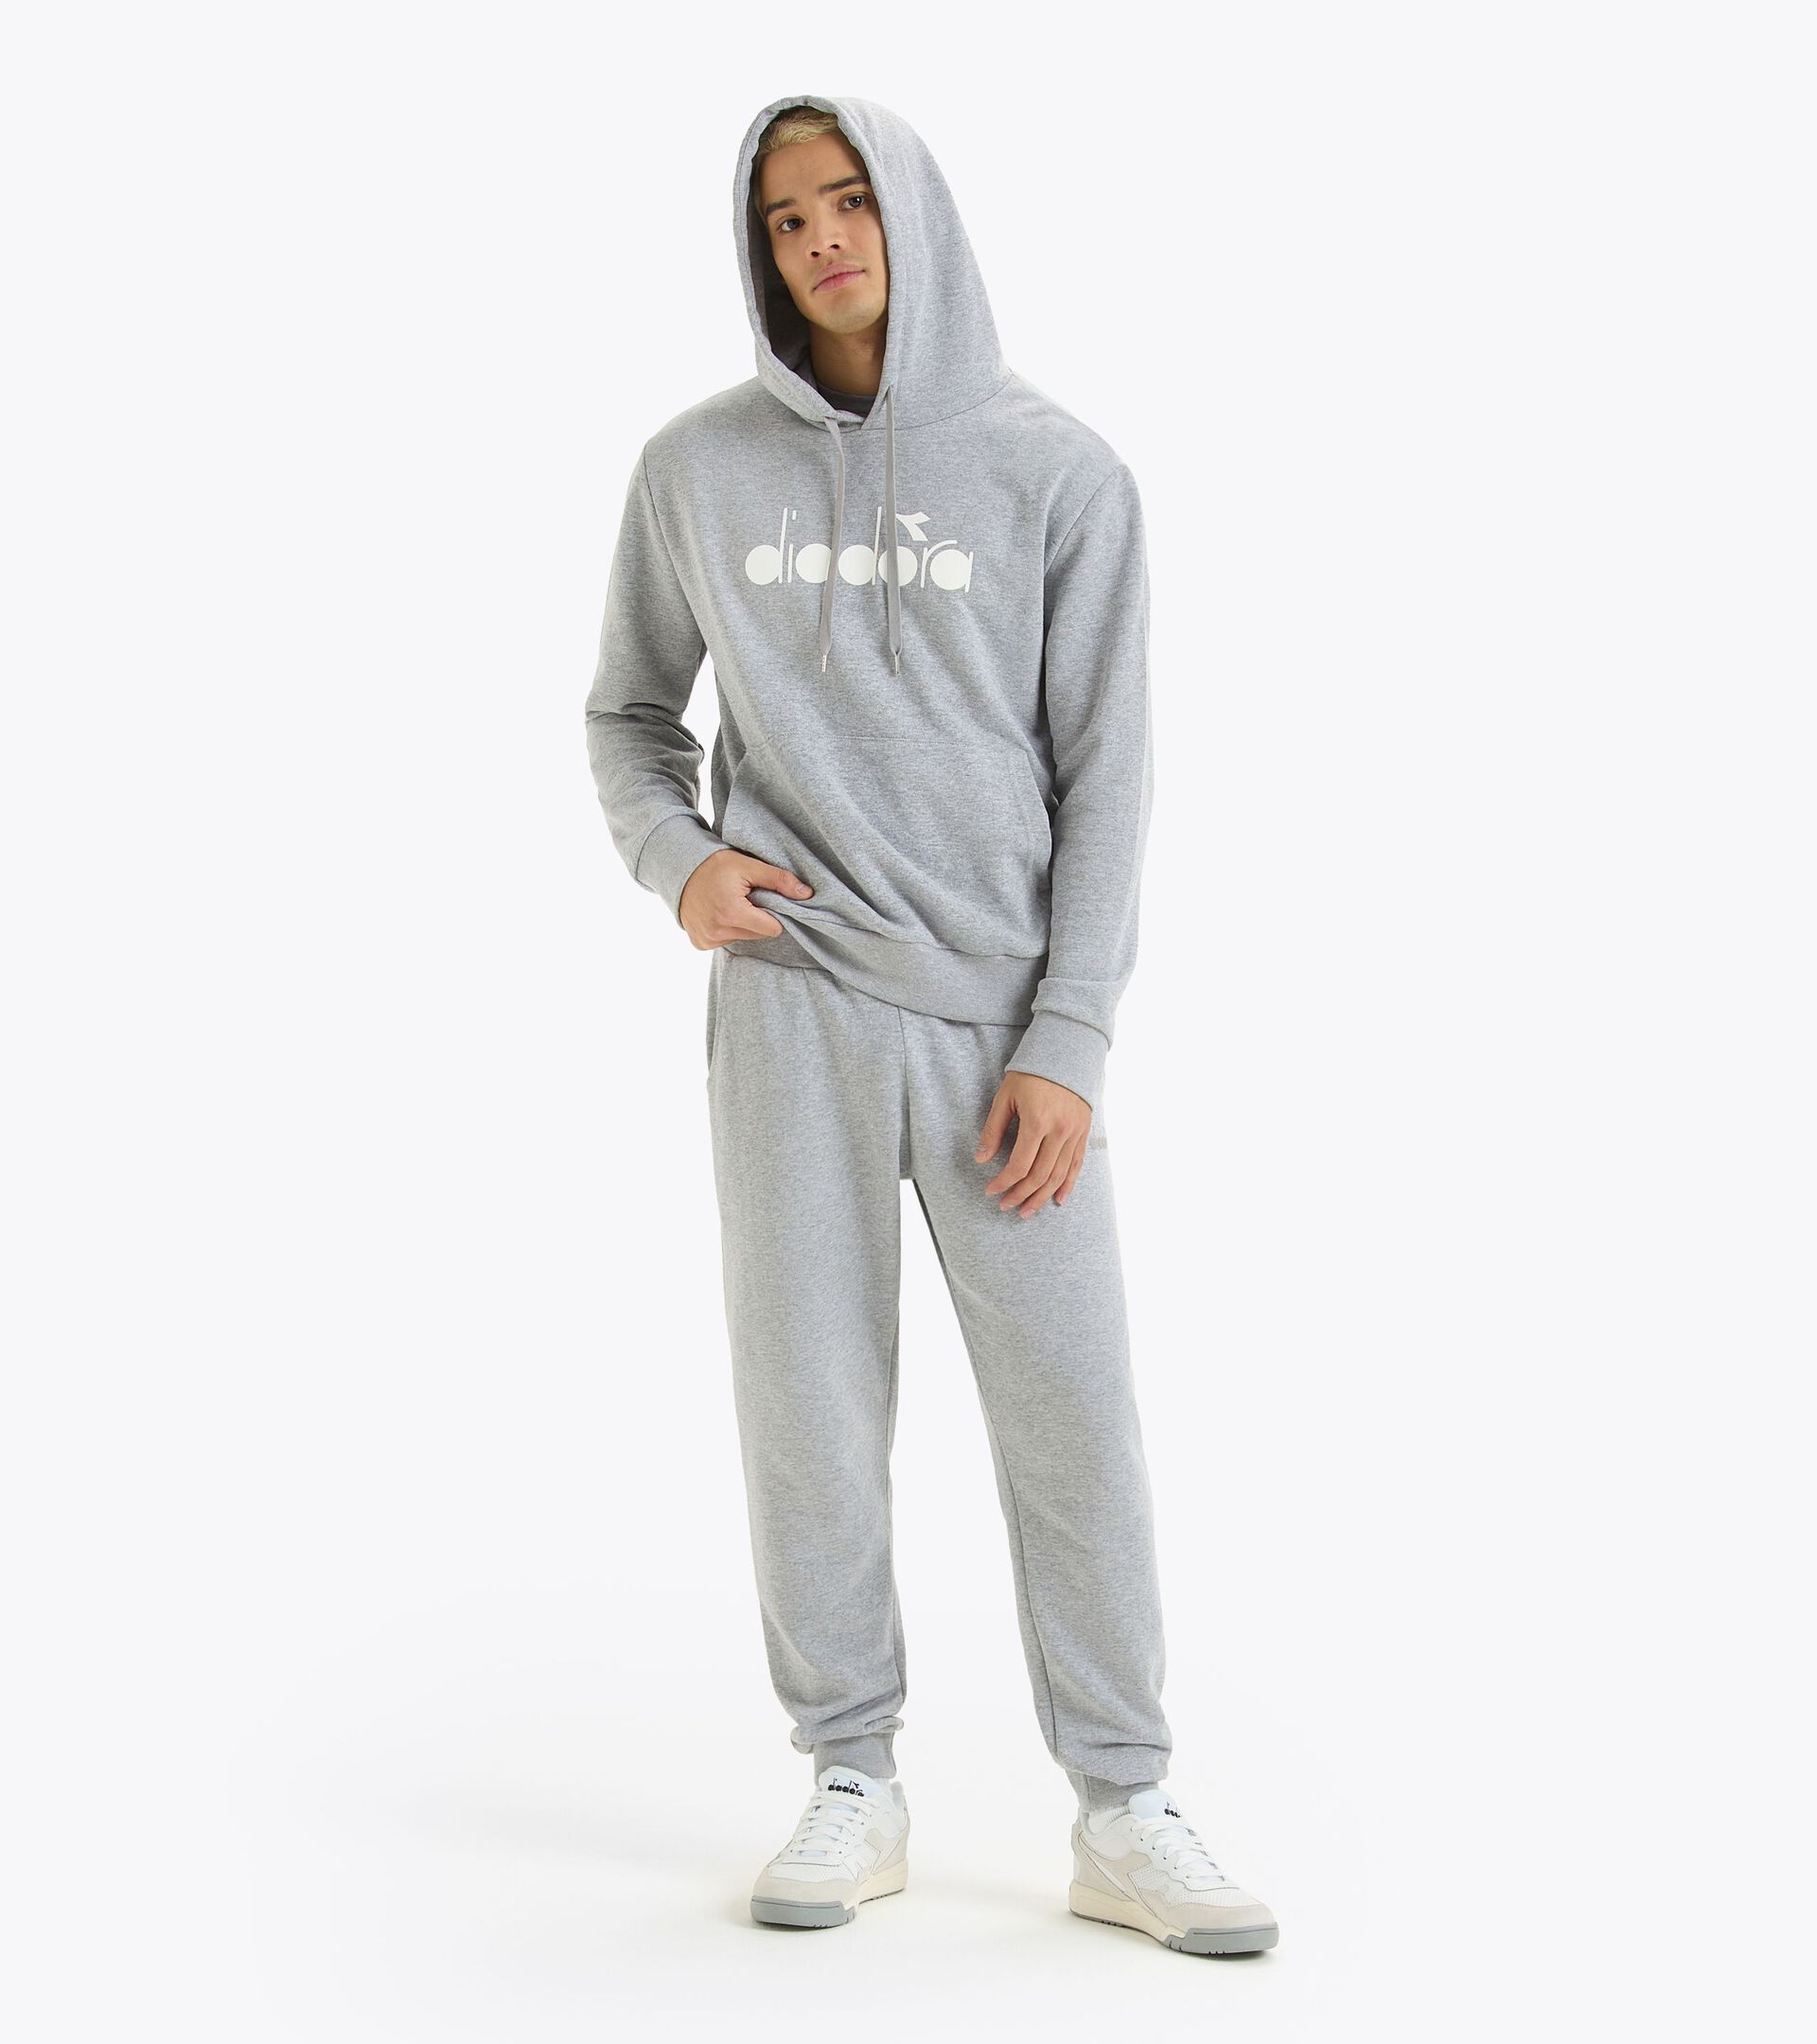 Sporty hoodie - Made in Italy - Gender Neutral HOODIE LOGO HIGH RISE MELANGE - Diadora